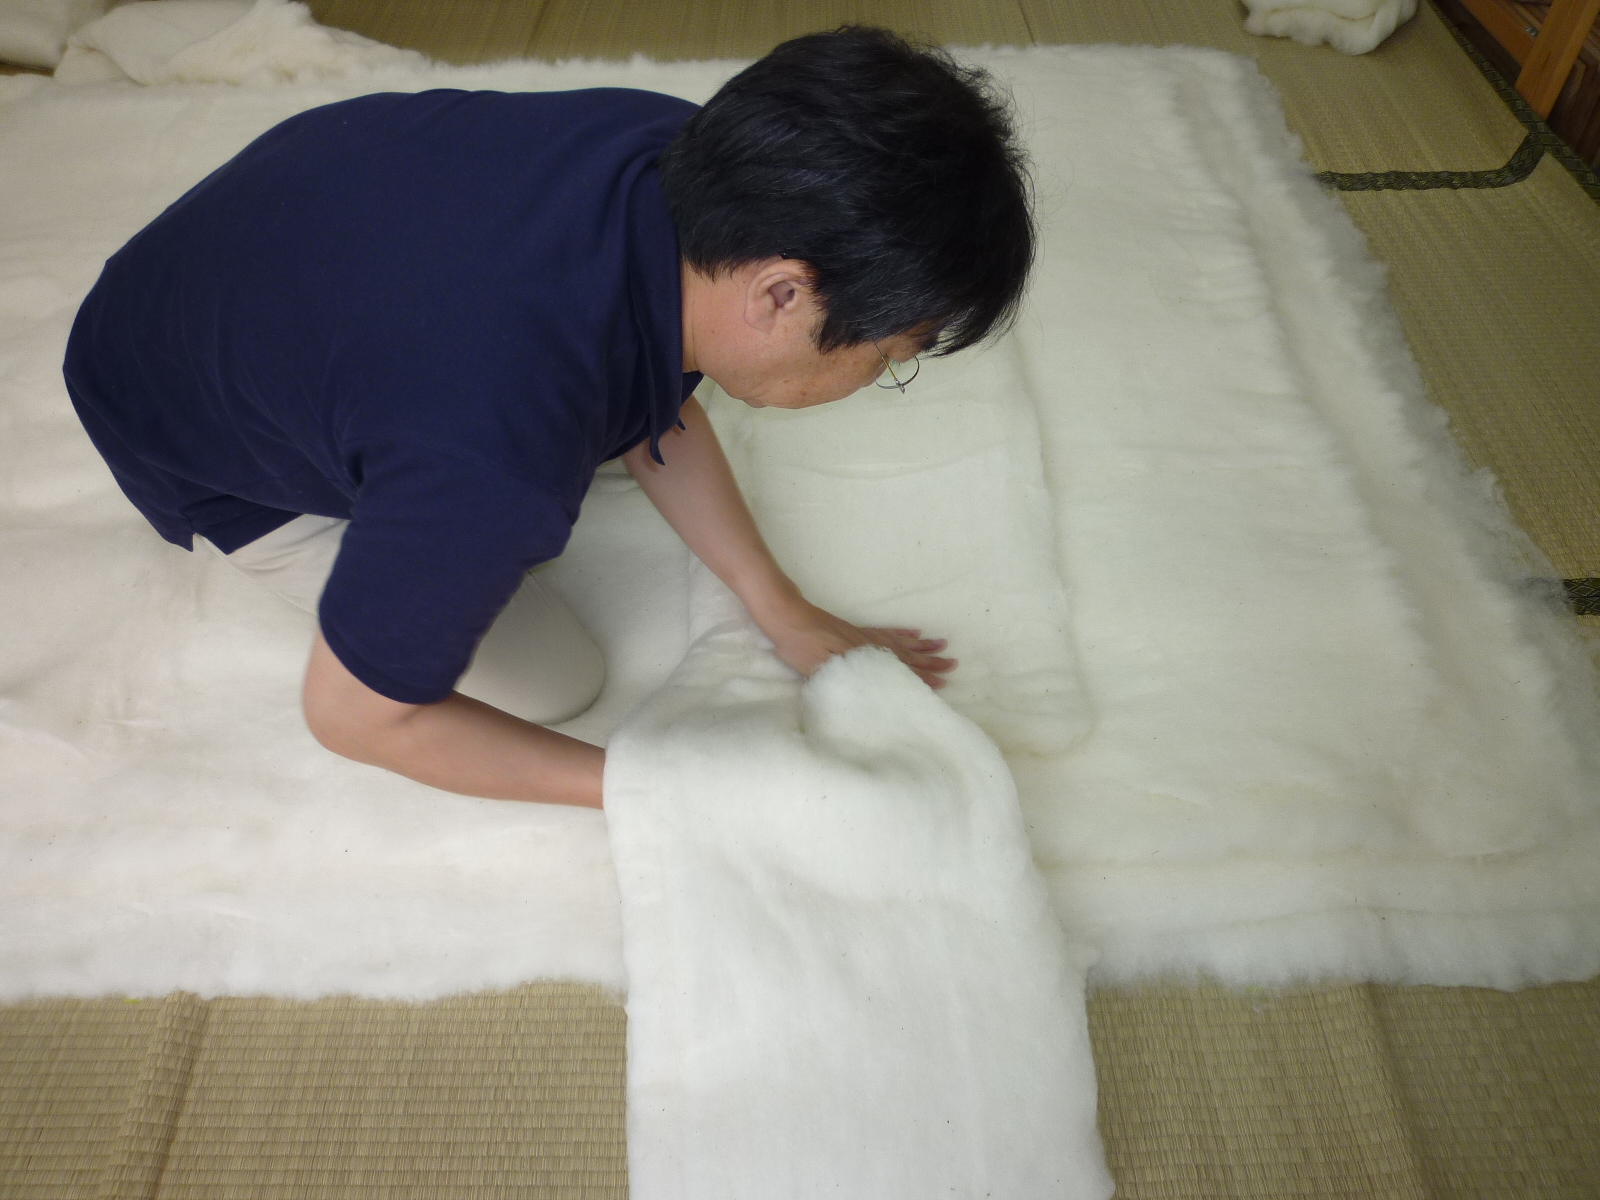 １級寝具製作技能士のいる店「布団屋しばた」が昔ながらの木綿わた布団を１枚ずつ丁寧に作らせて頂きます。//岡山県瀬戸内市